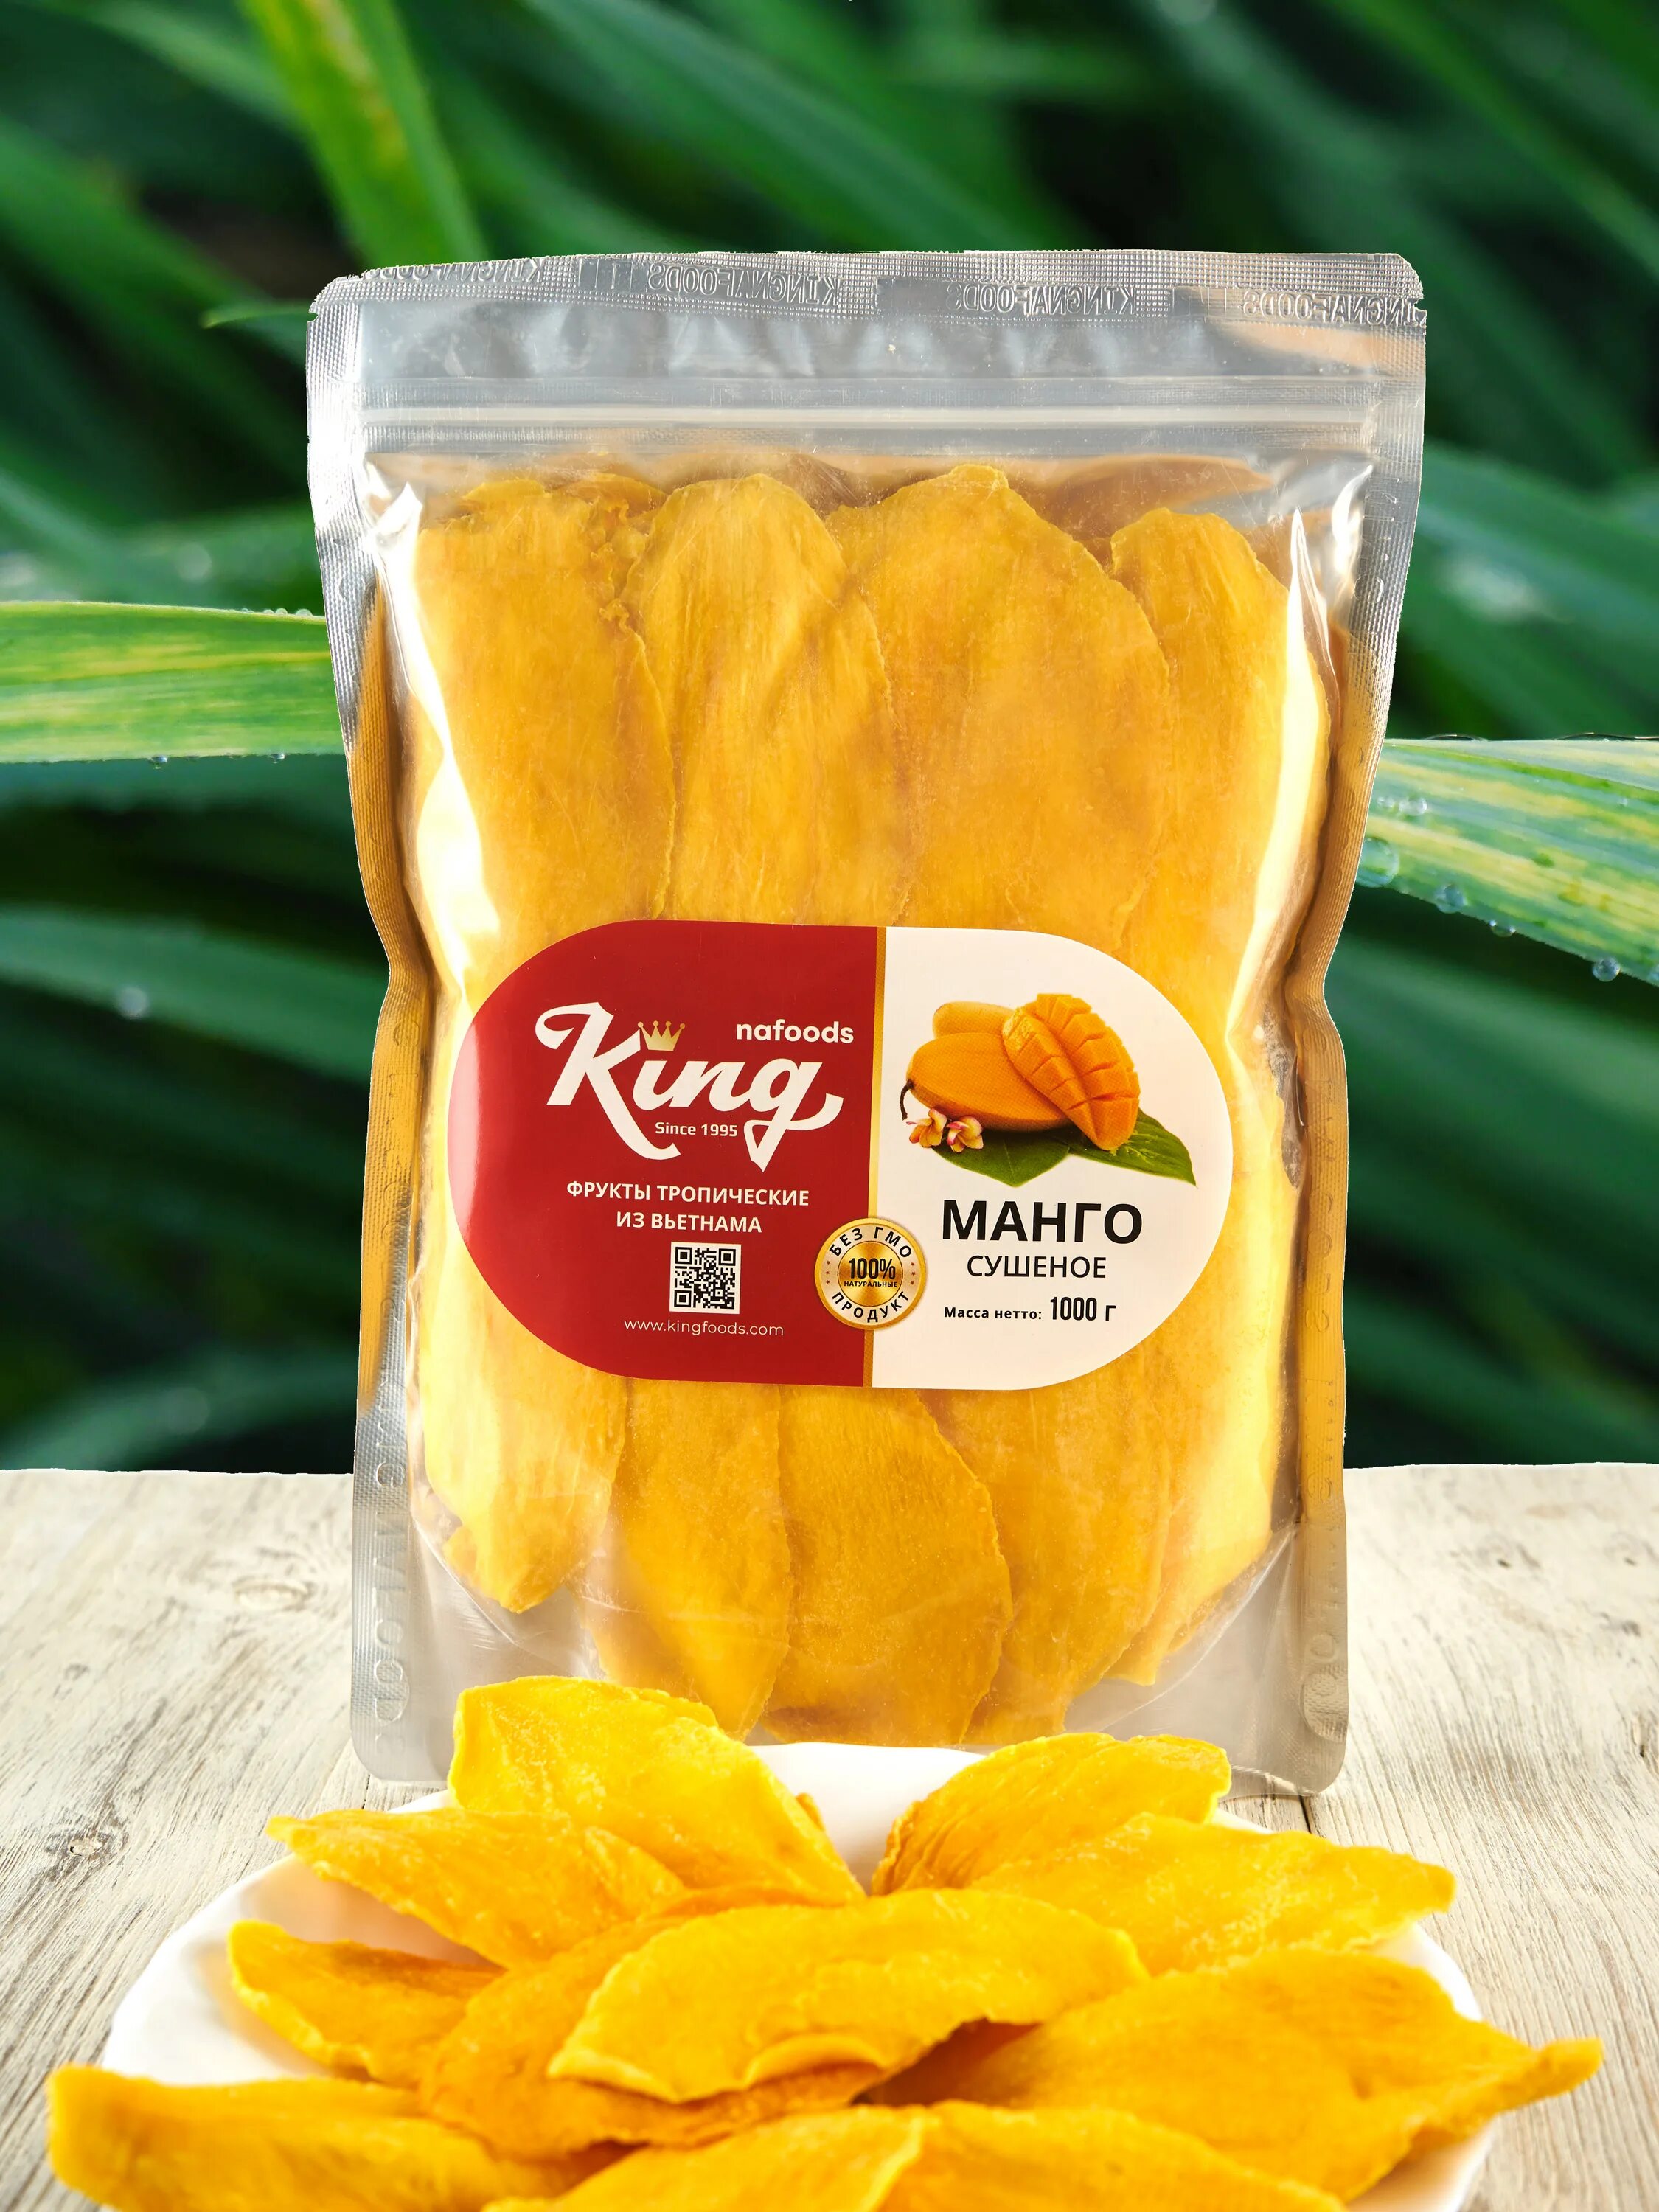 Сколько стоит кг манго. Манго сушёное King. Манго сушеное 1кг. Манго Кинг Вьетнам сушеный 1 кг. Манго Вьетнам Kong сушеное.